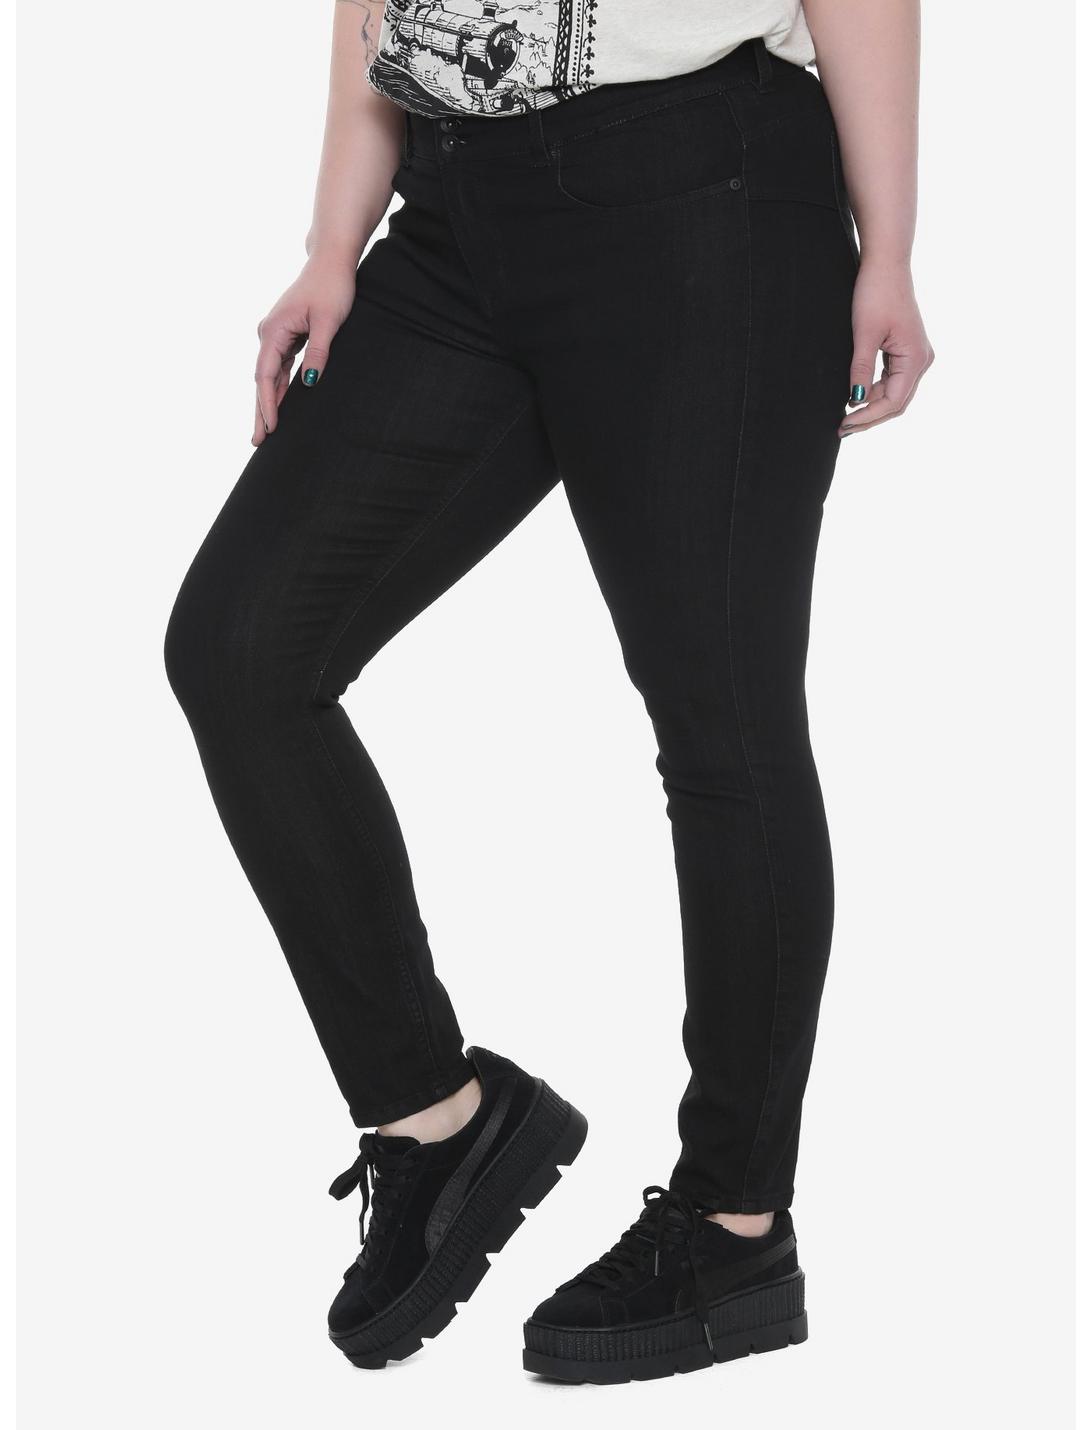 Blackheart Black Super Skinny Jeans Plus Size, BLACK, hi-res